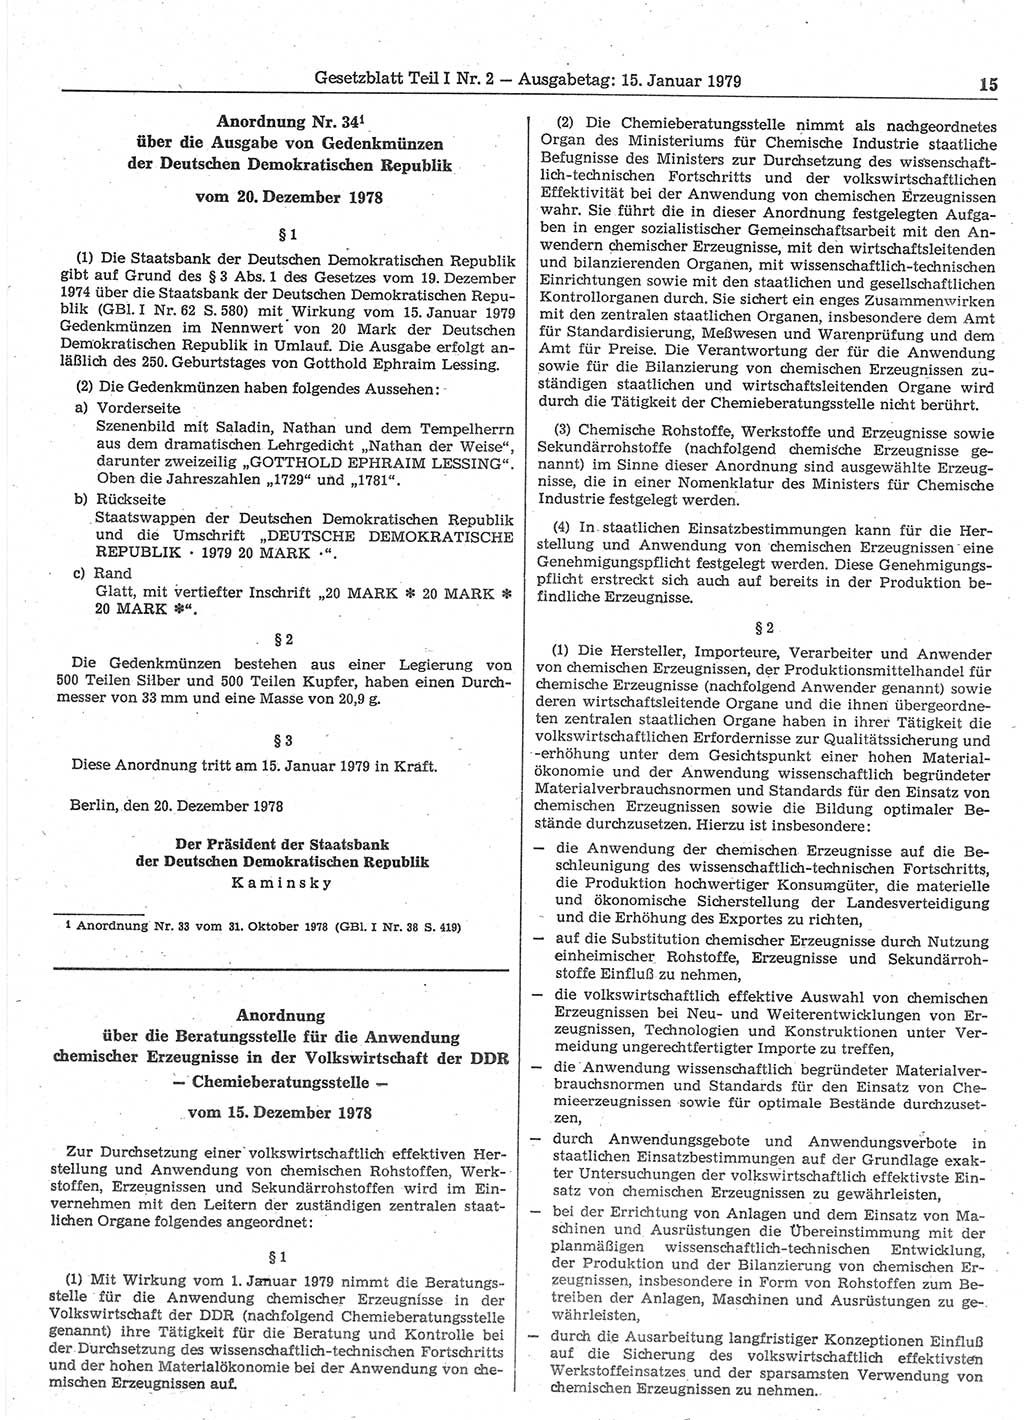 Gesetzblatt (GBl.) der Deutschen Demokratischen Republik (DDR) Teil Ⅰ 1979, Seite 15 (GBl. DDR Ⅰ 1979, S. 15)